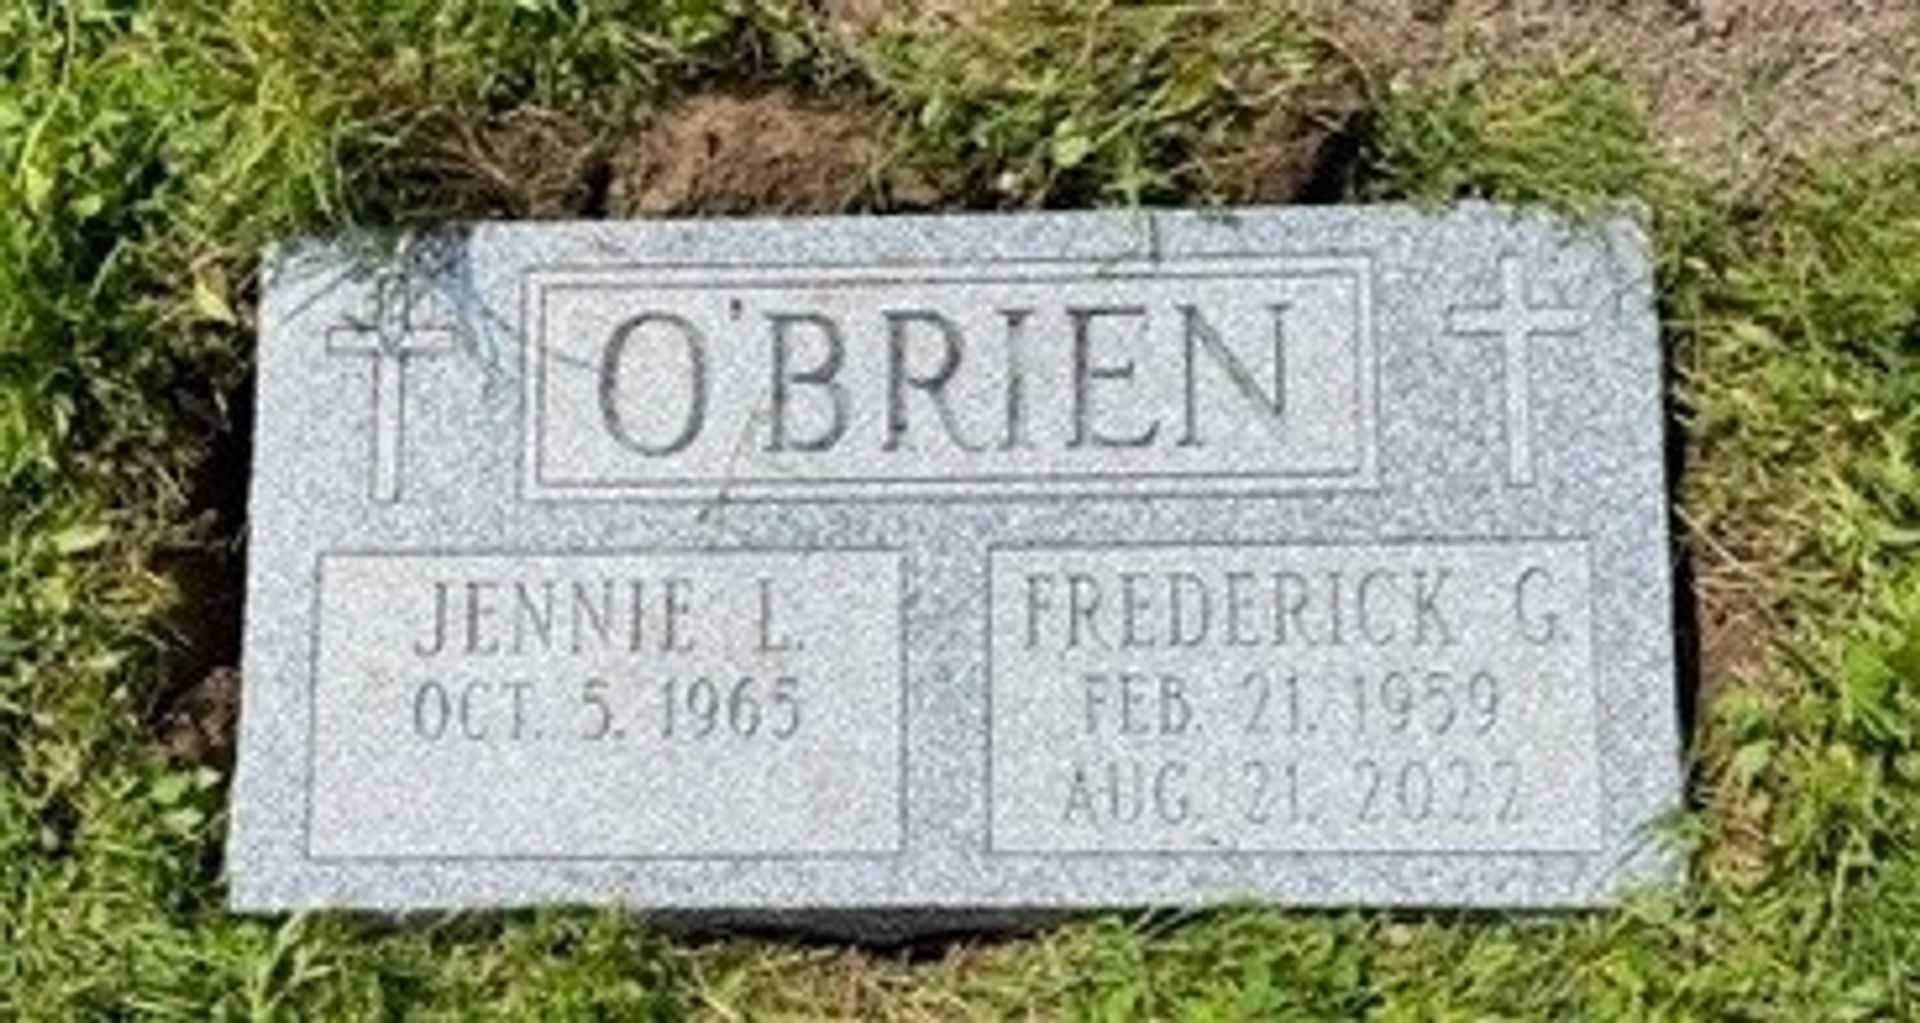 Frederick G O'Brien's grave